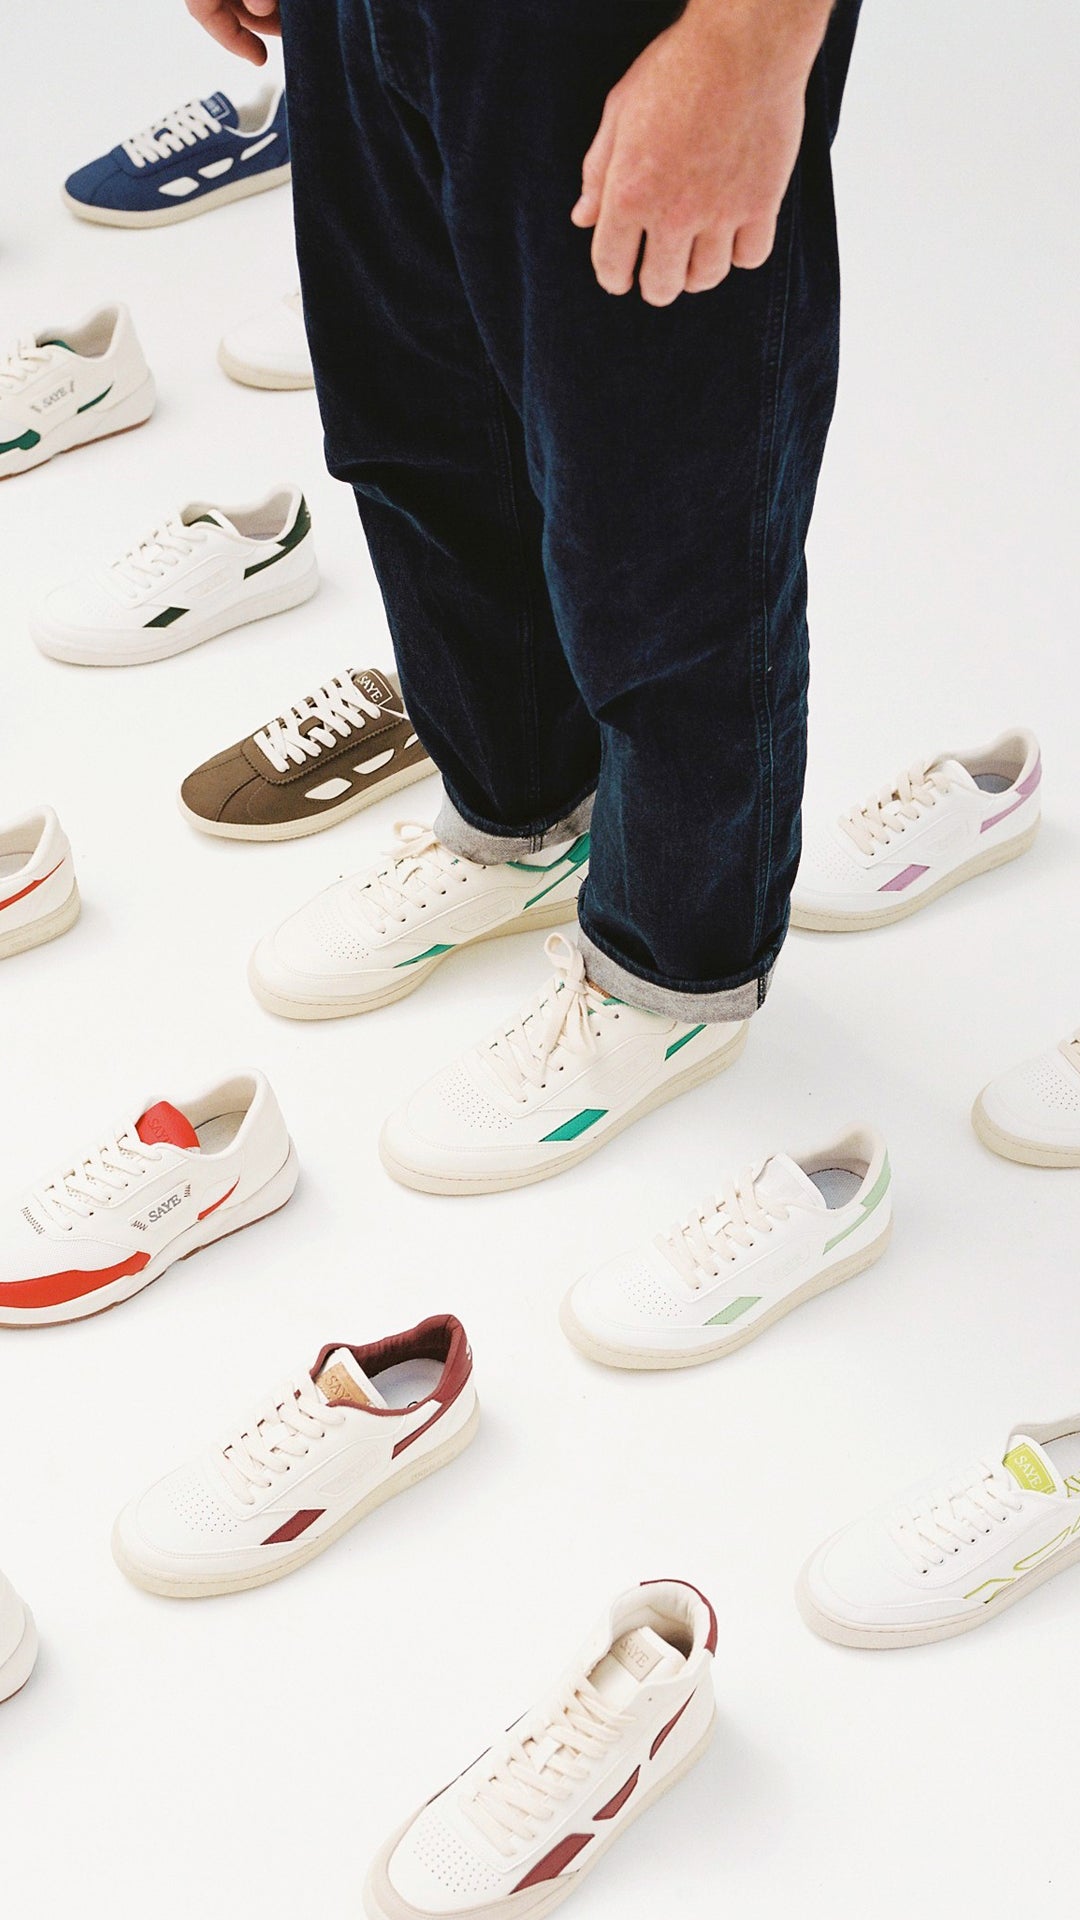 buis incompleet bevind zich SAYE | Vegan Bio-based Sneakers.